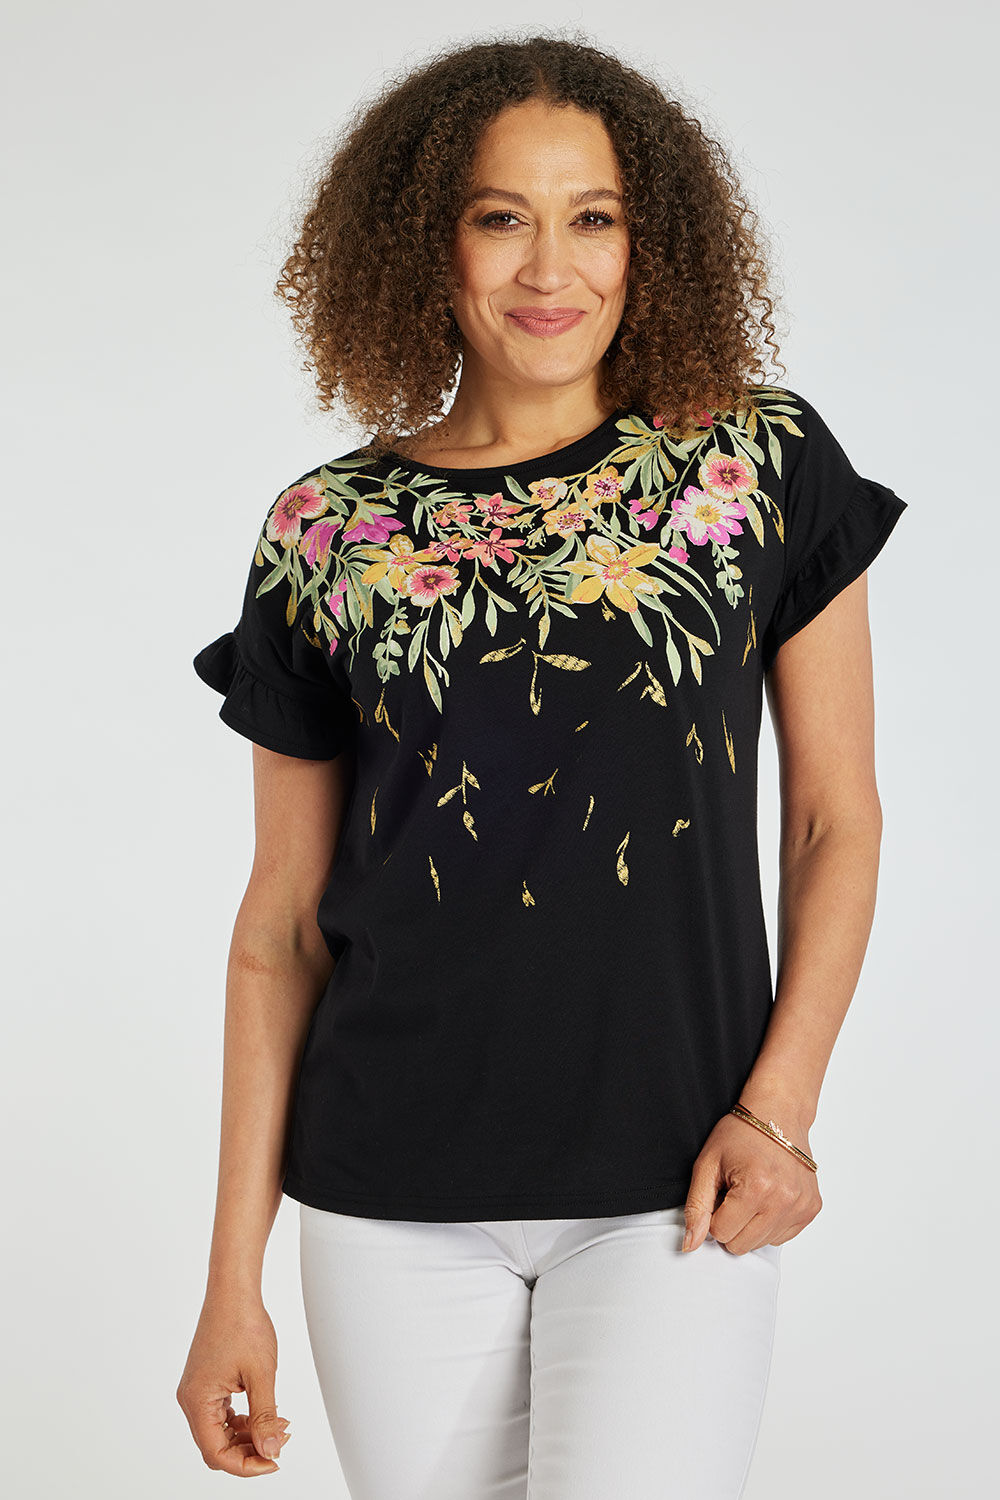 Bonmarche Black Short Sleeve Trailing Floral T-Shirt, Size: 10